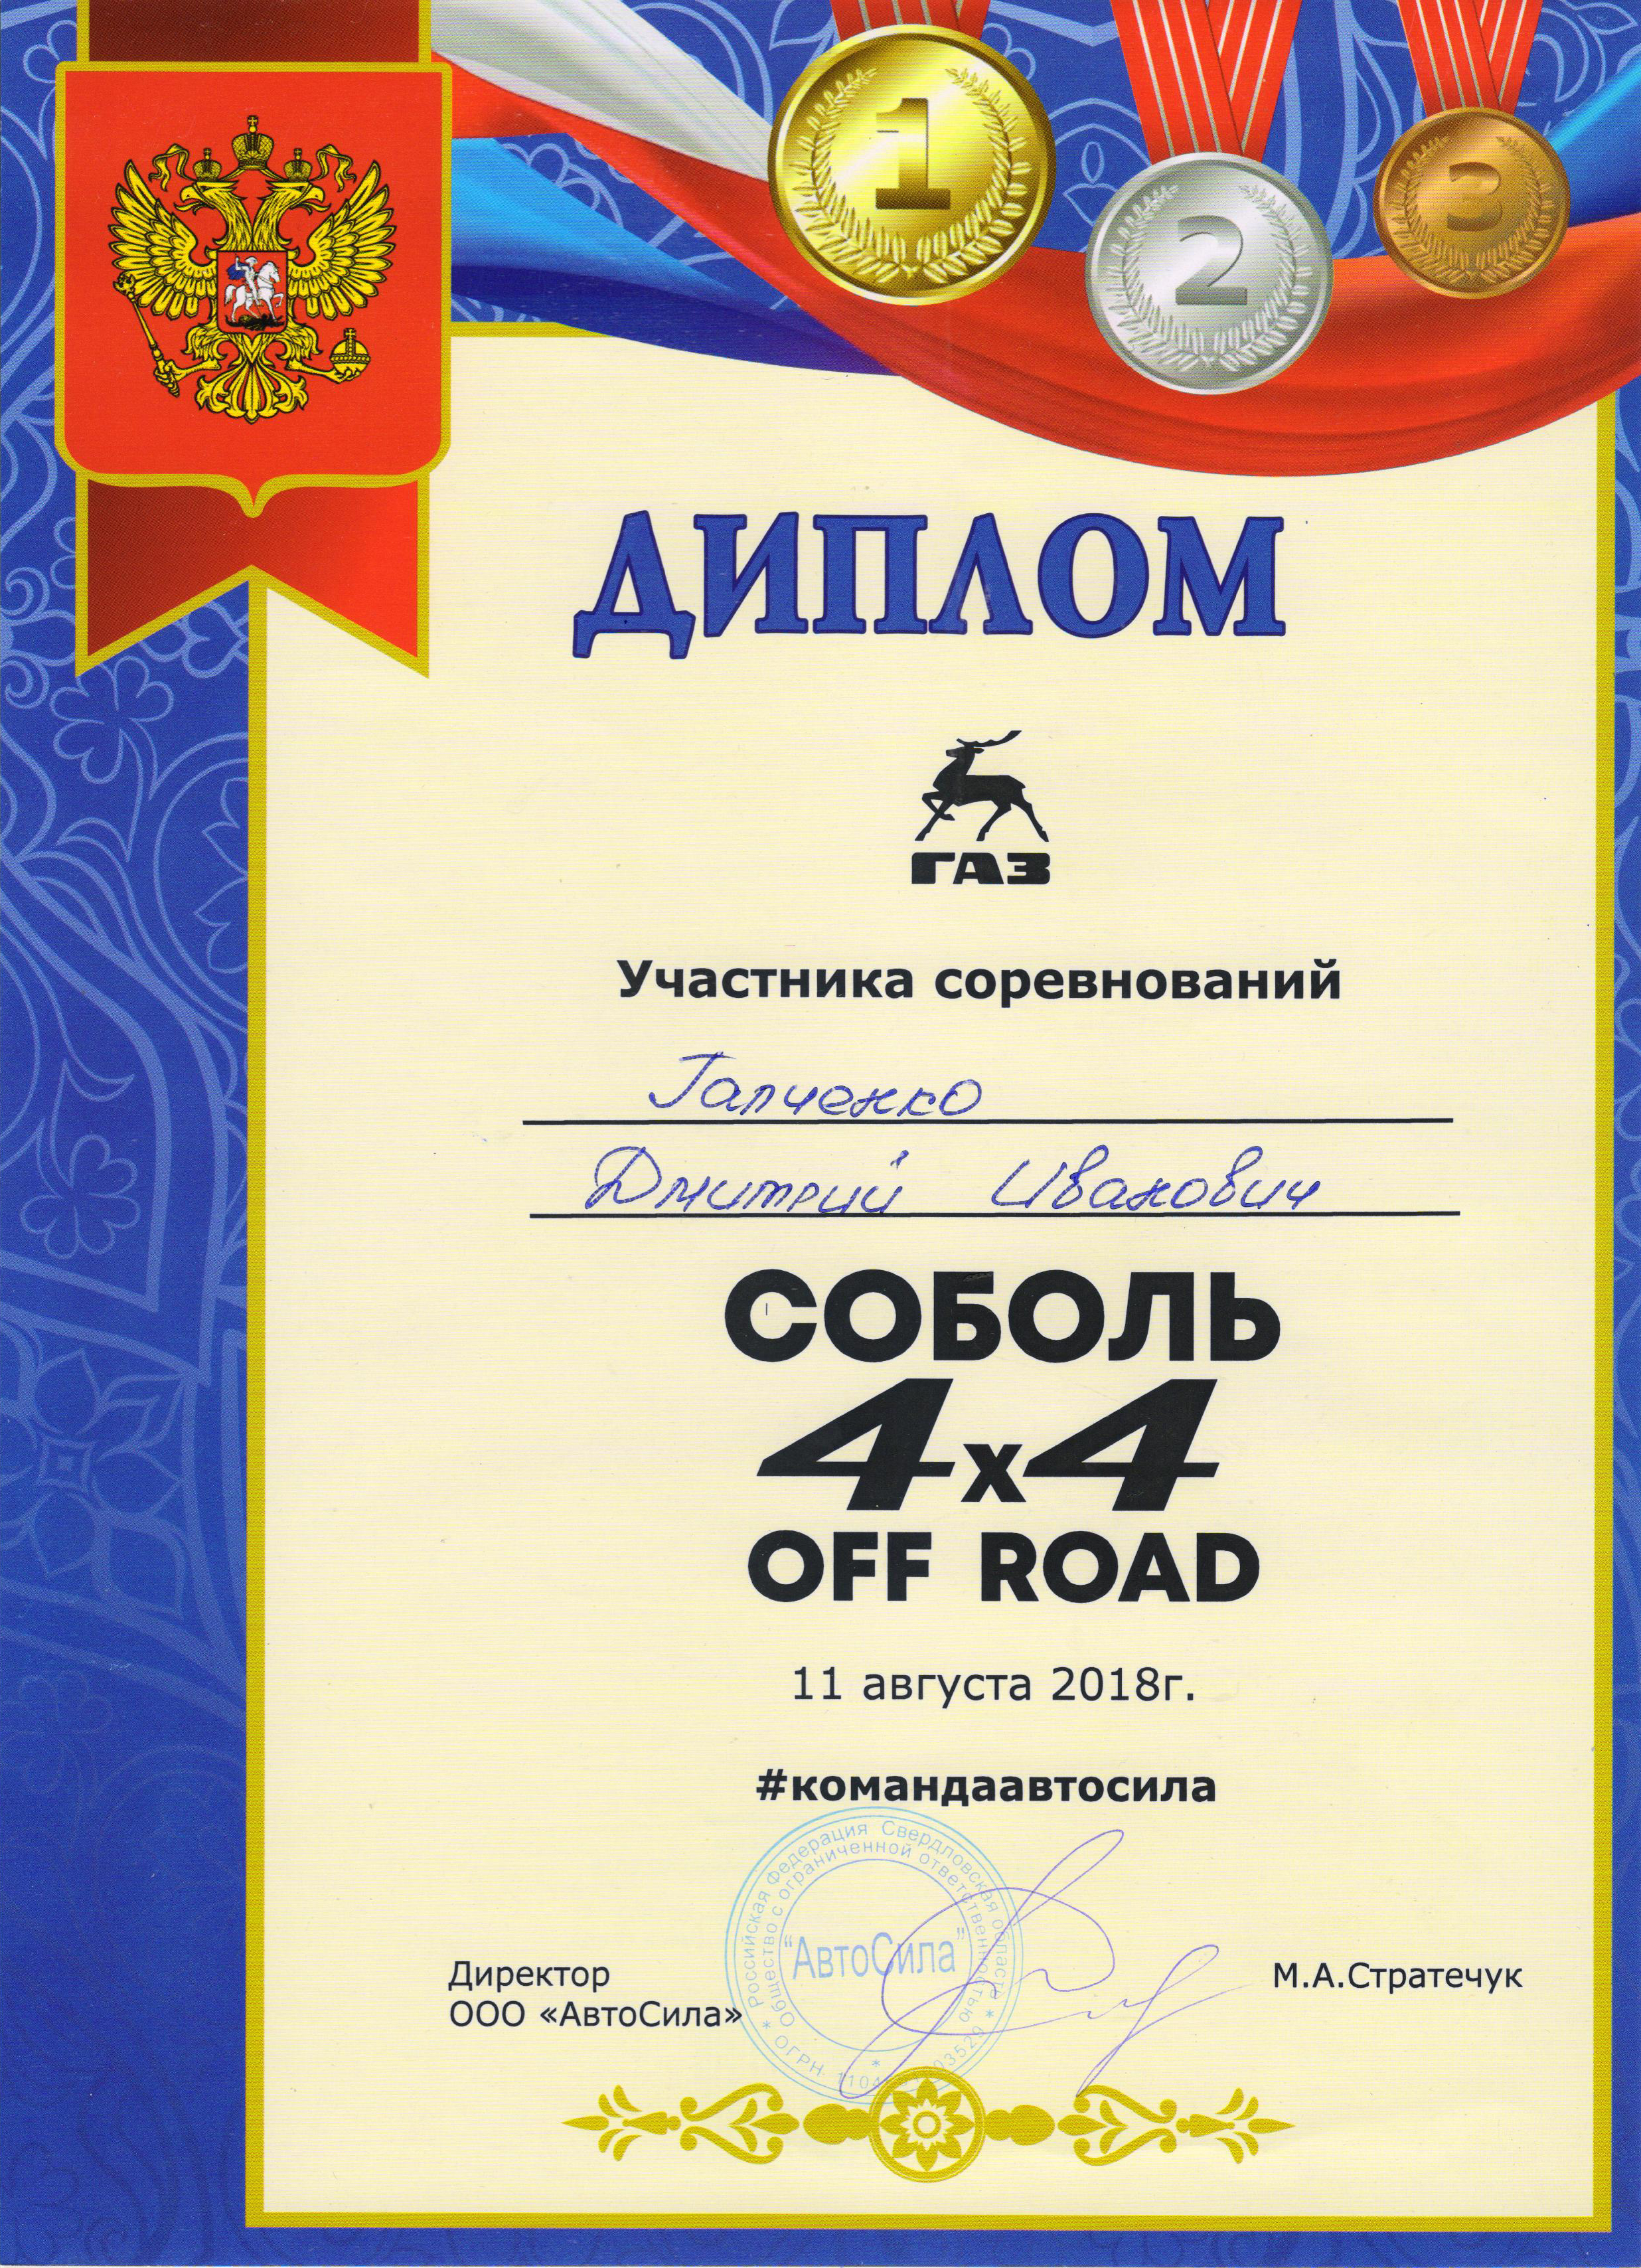 Уральский Фестиваль любителей внедорожных автомобилей